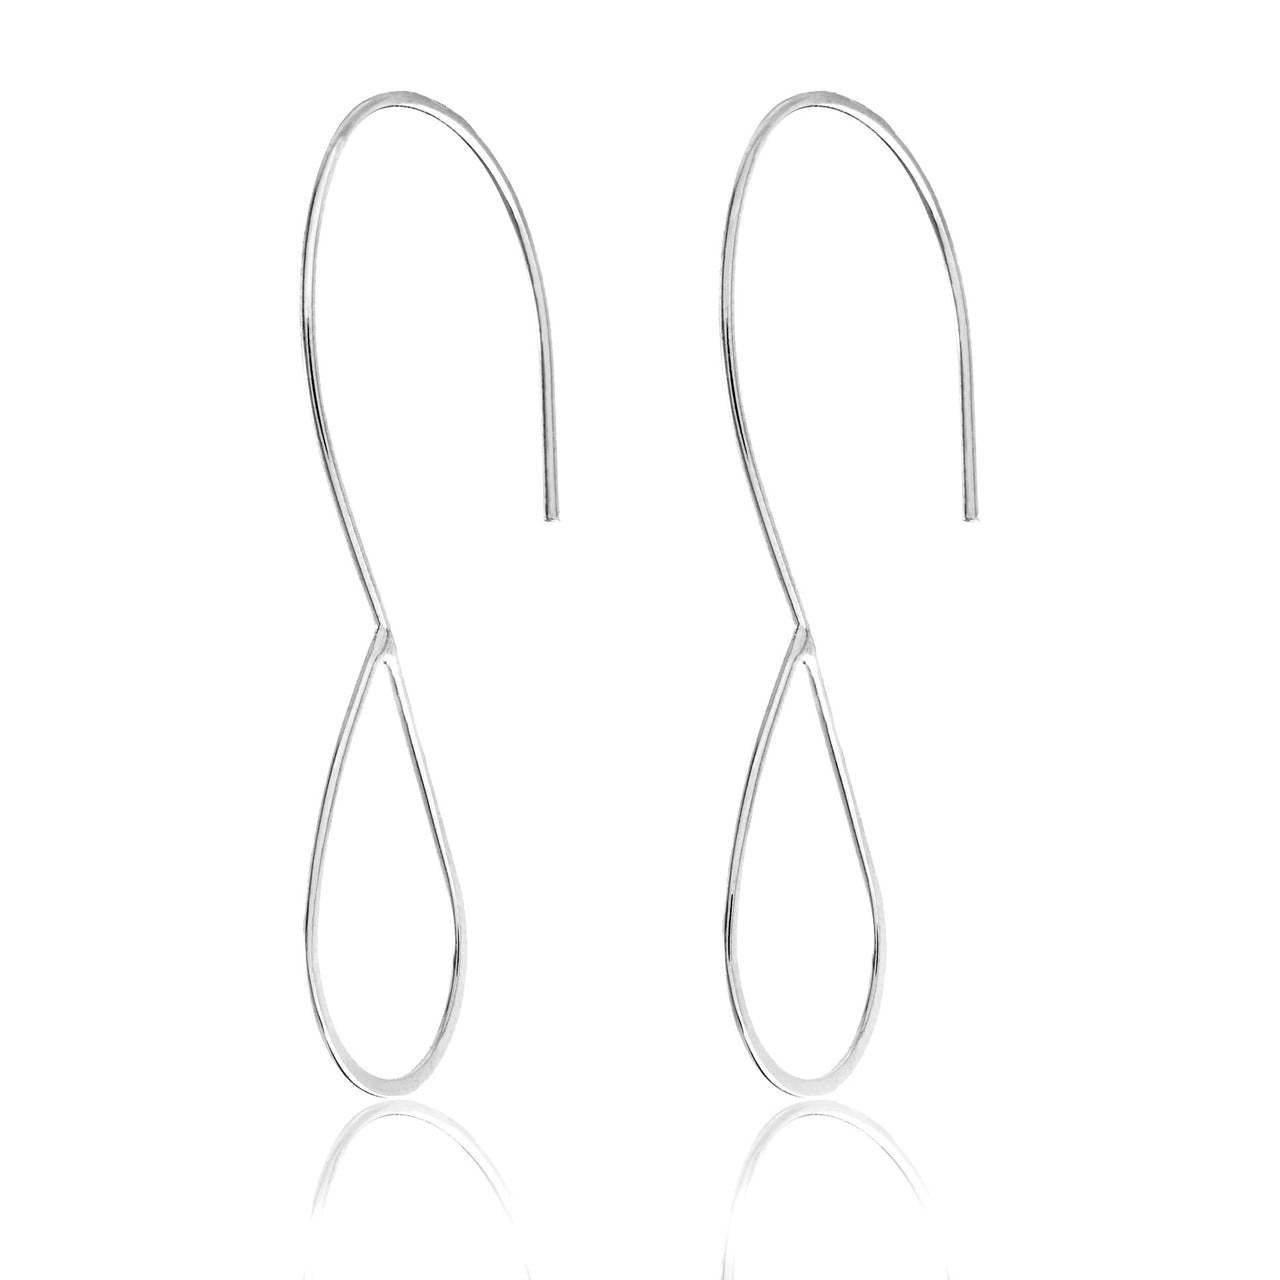 Lesa Michele Open Teardrop Thin Earrings in Rhodium Plated Brass